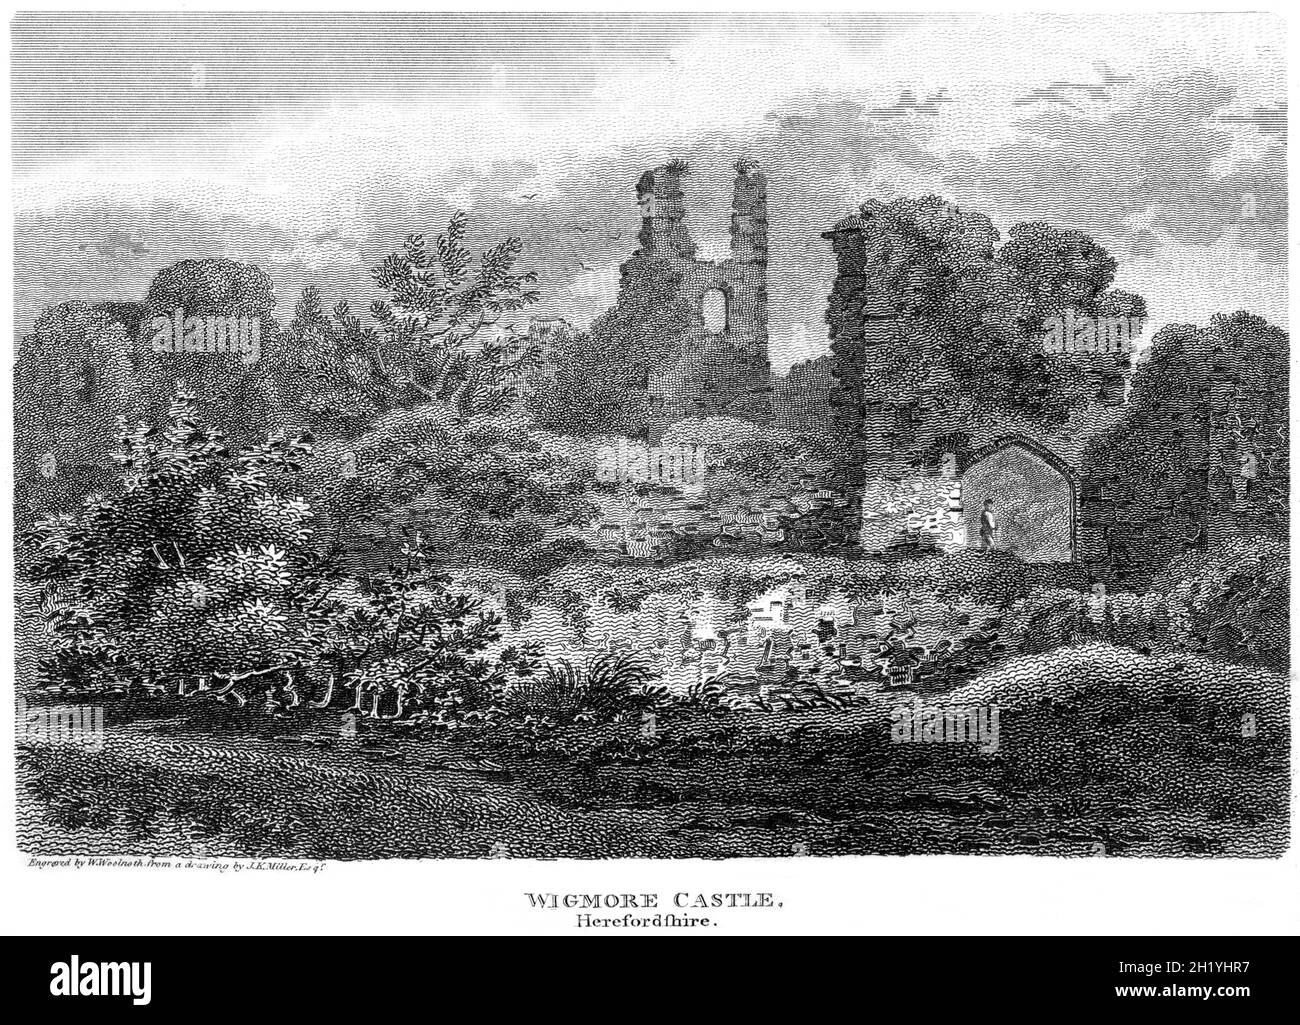 Ein Stich von Wigmore Castle, Herefordshire, gescannt in hoher Auflösung aus einem Buch, das 1812 gedruckt wurde. Dieses Bild wird angenommen, dass es frei von allen Histori ist Stockfoto